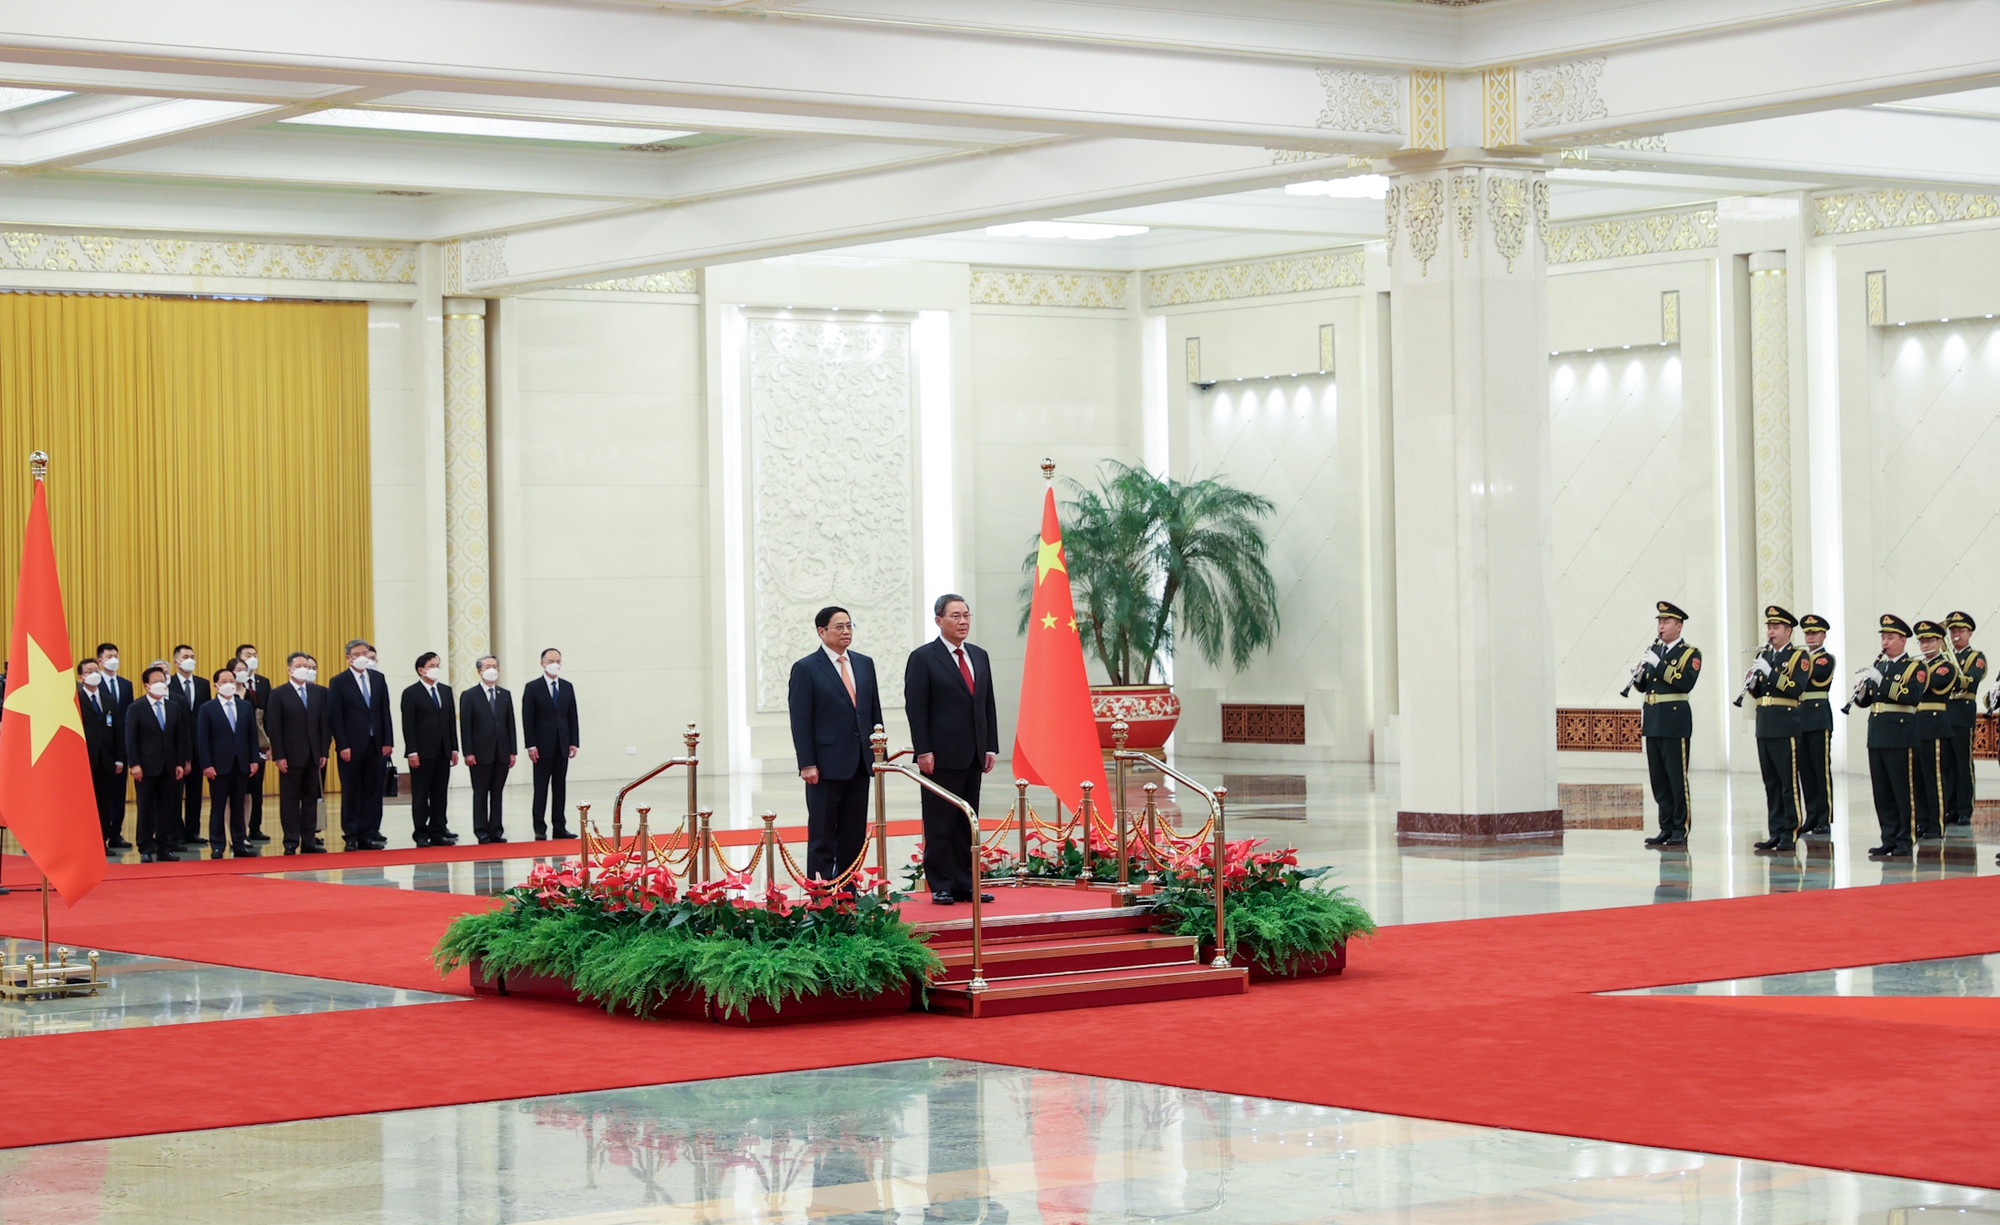 Chùm ảnh: Lễ đón chính thức Thủ tướng Chính phủ Phạm Minh Chính thăm Trung Quốc - Ảnh 3.